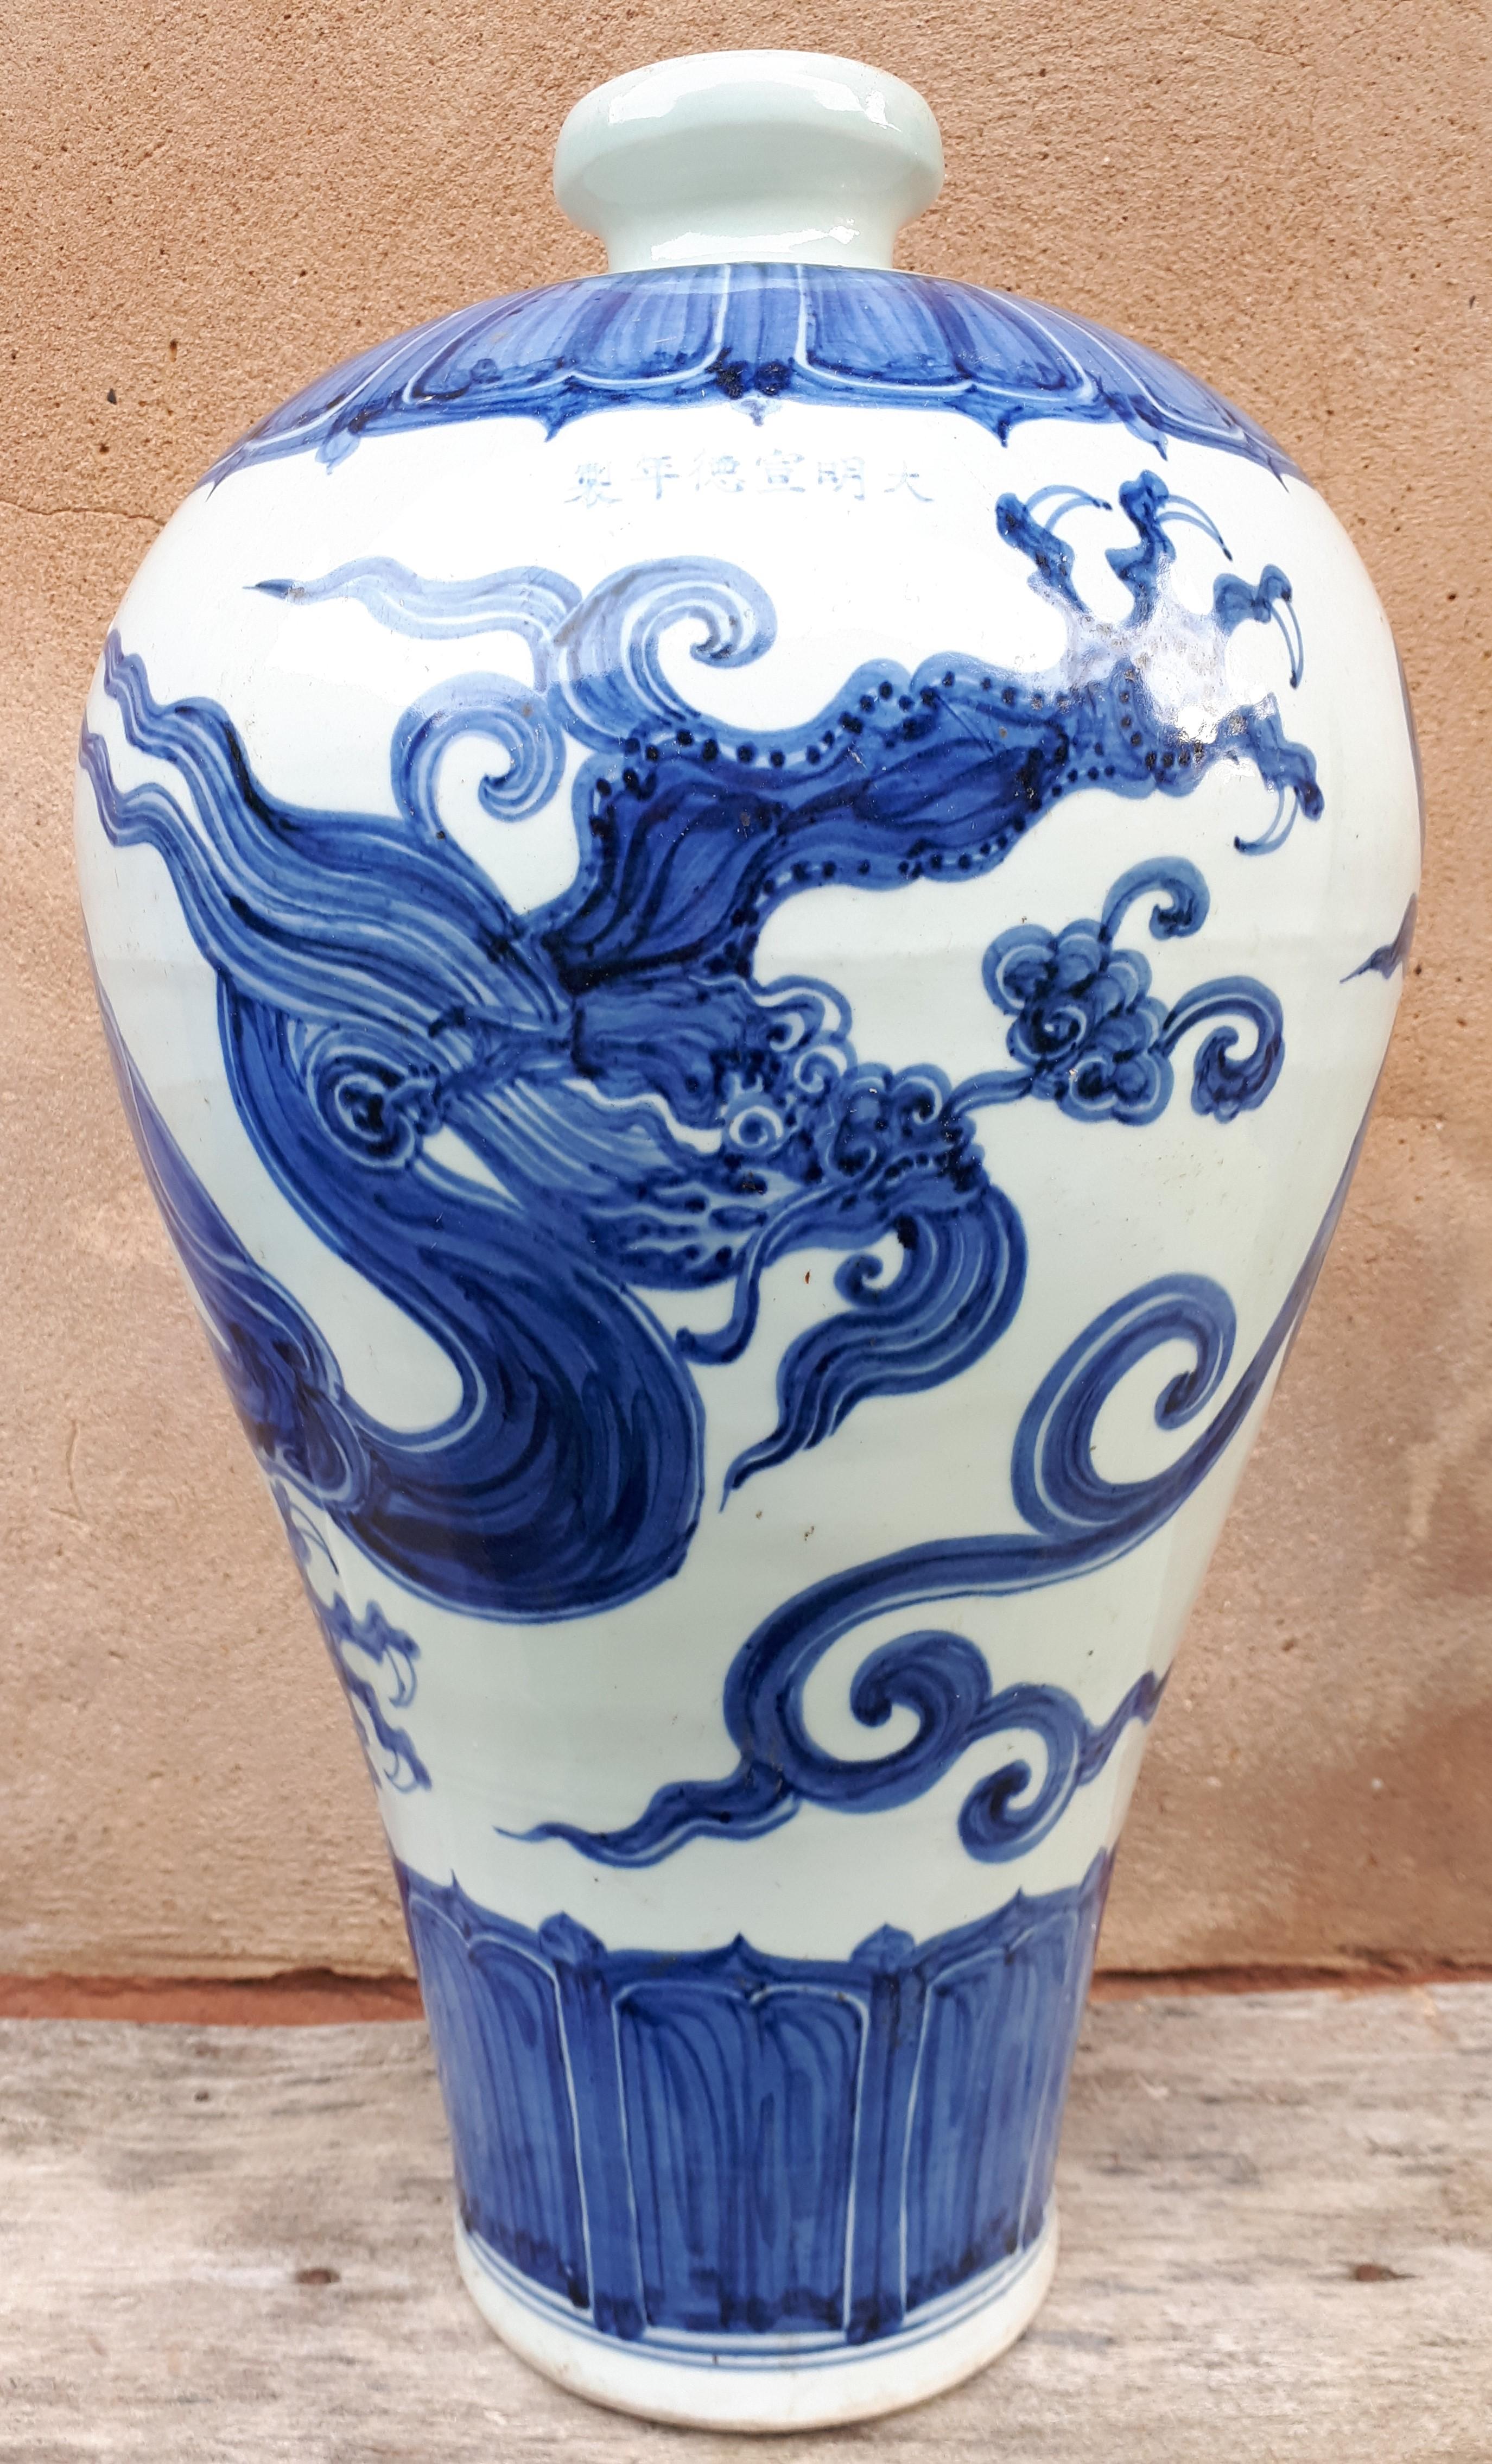 Grand vase en porcelaine de Meiping à décor en bleu sous glaçure d'un dragon poursuivant la perle sacrée.
Ce décor tournant du dragon sur tout le corps du vase a été réalisé avec souplesse et vigueur, témoignant de la grande dextérité du